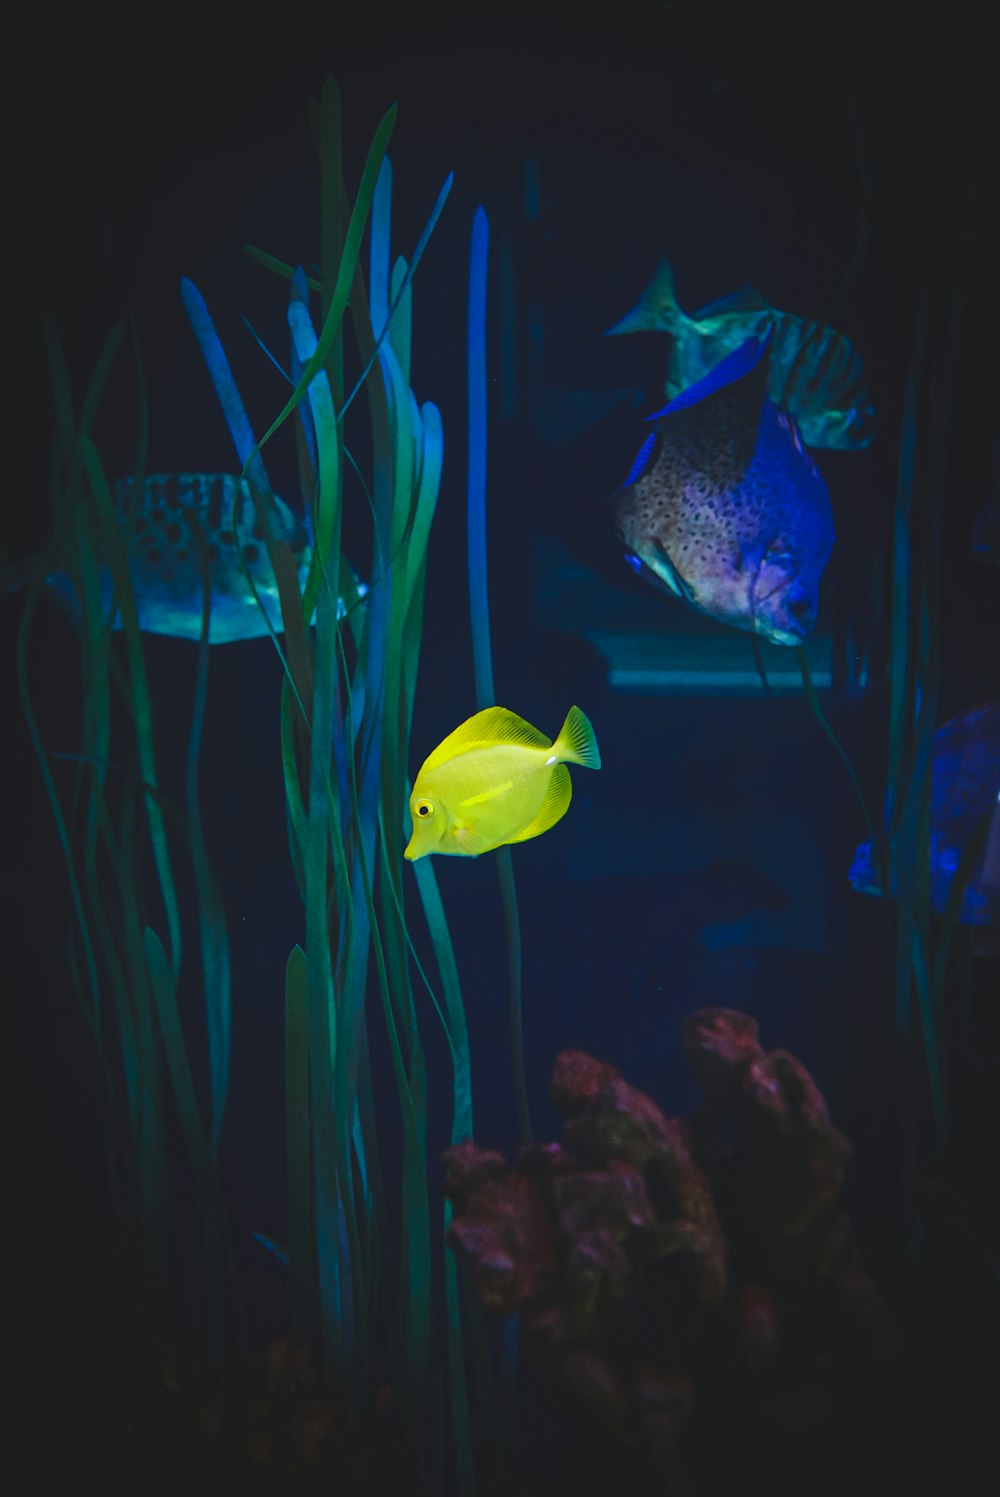 yellow fish in fish tank